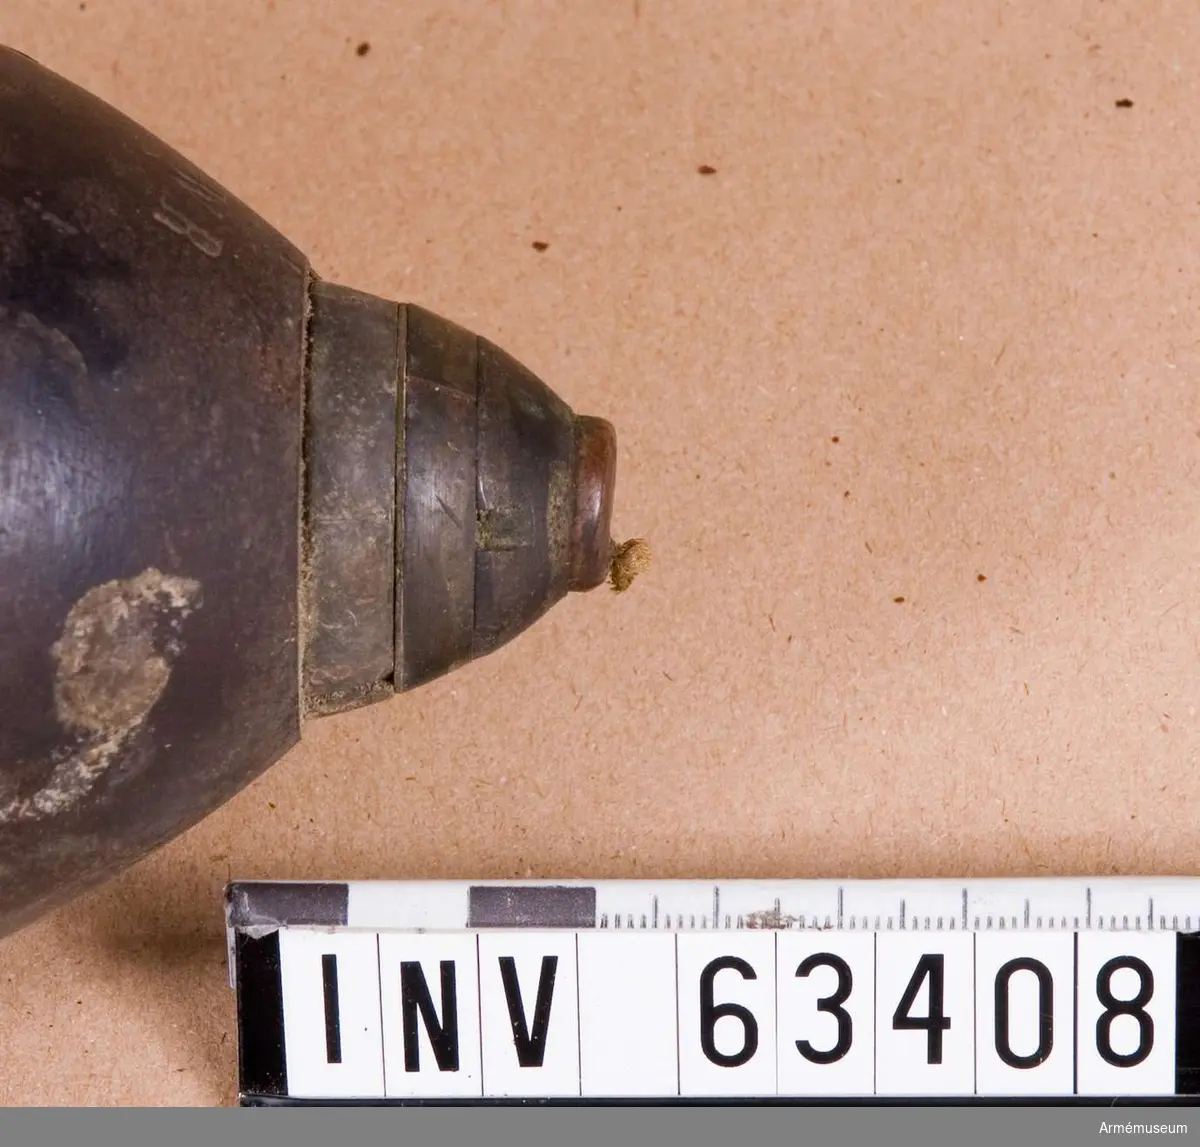 Grupp F II.  
Tidrör m/1864 till 10 cm svag, fylld granatkartesch m/1872 för framladdningskanon.